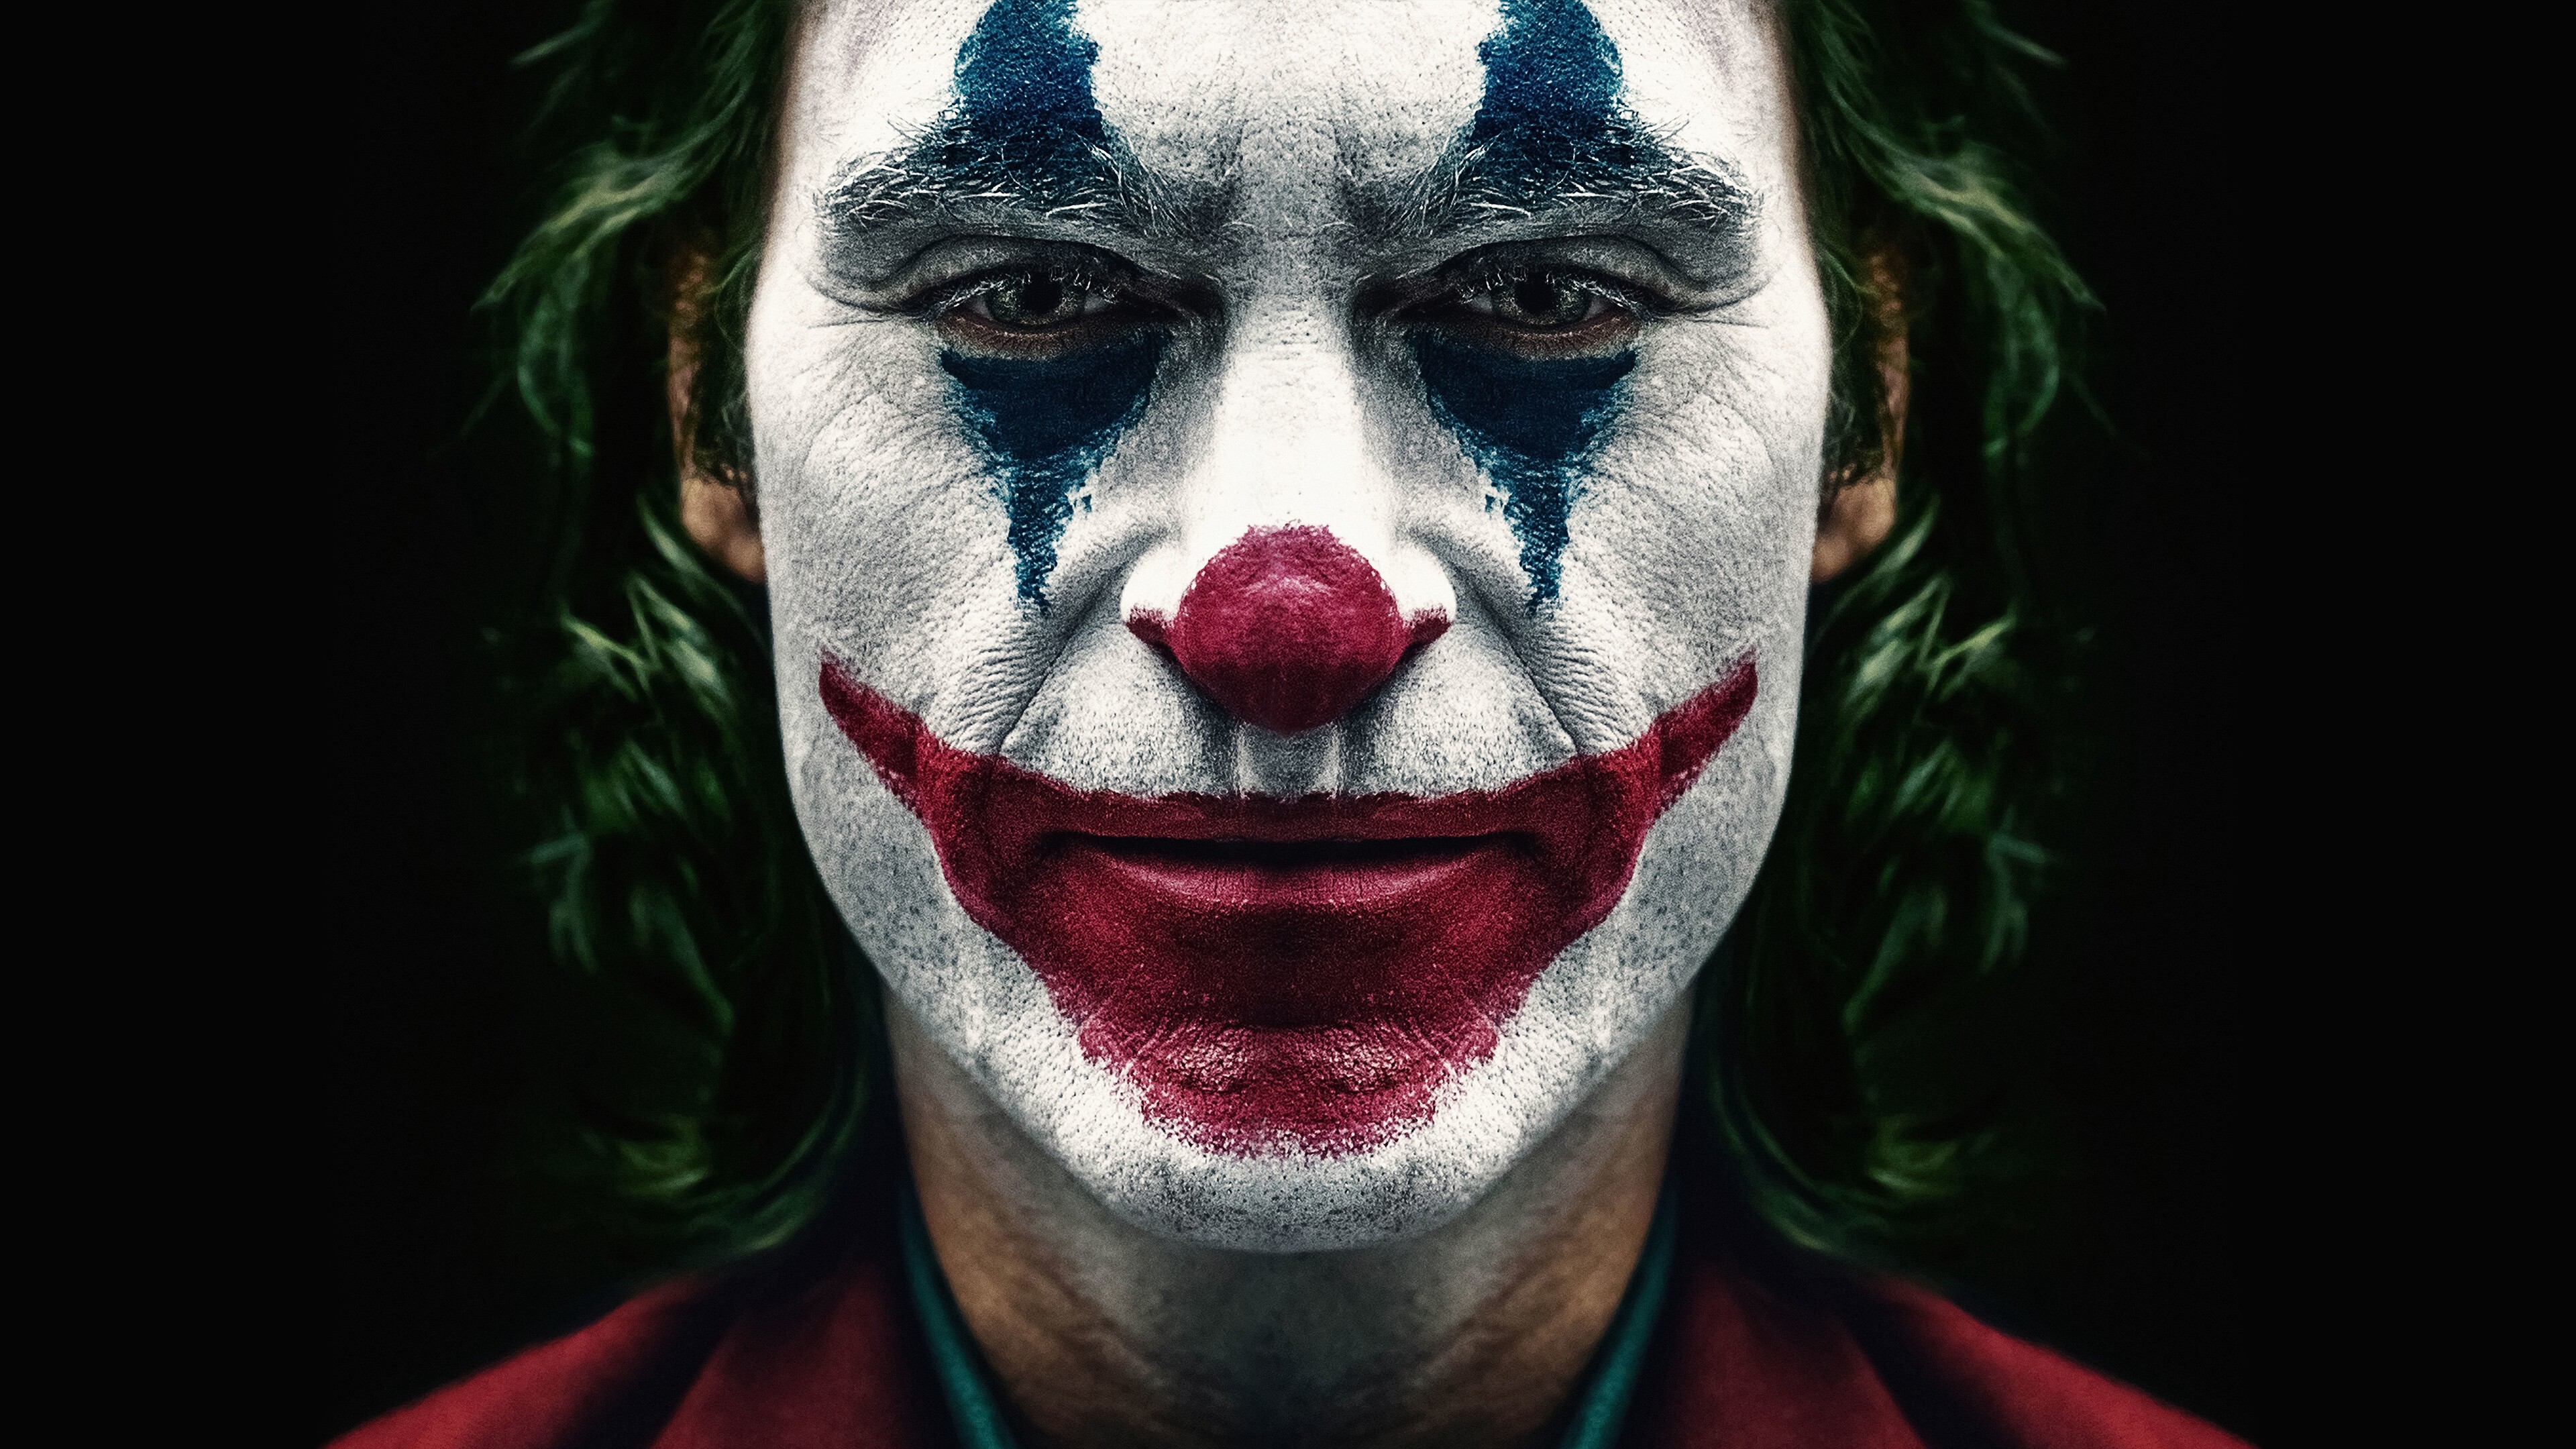 General 3840x2160 Joker (2019 Movie) Joker super villain DC Universe closeup face clown green hair face paint men movie characters Joaquin Phoenix short hair looking at viewer actor DC Comics